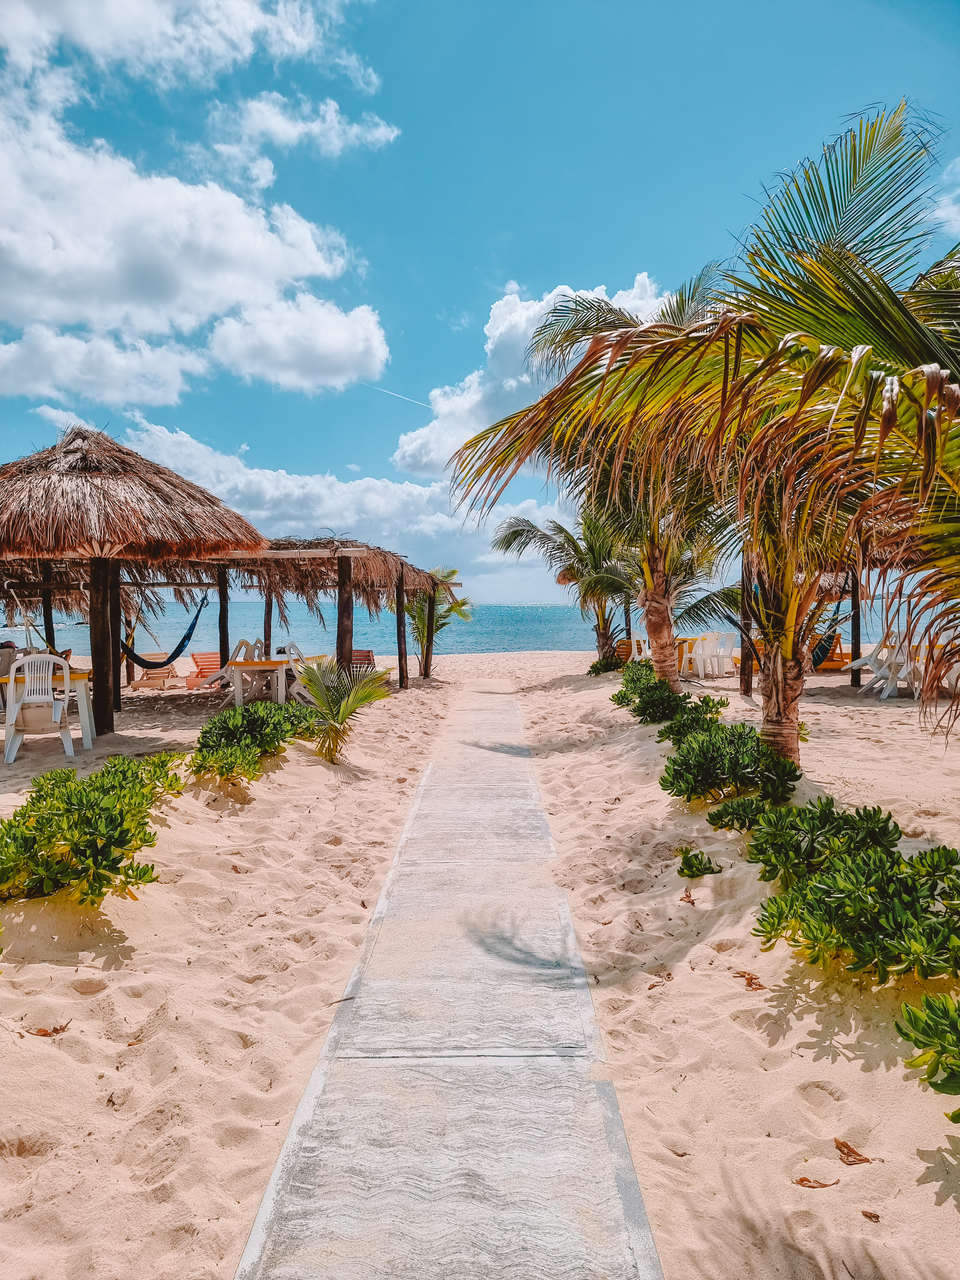 Wyspa Cozumel w Meksyku - Kierunki Świata | Blog podróżniczy